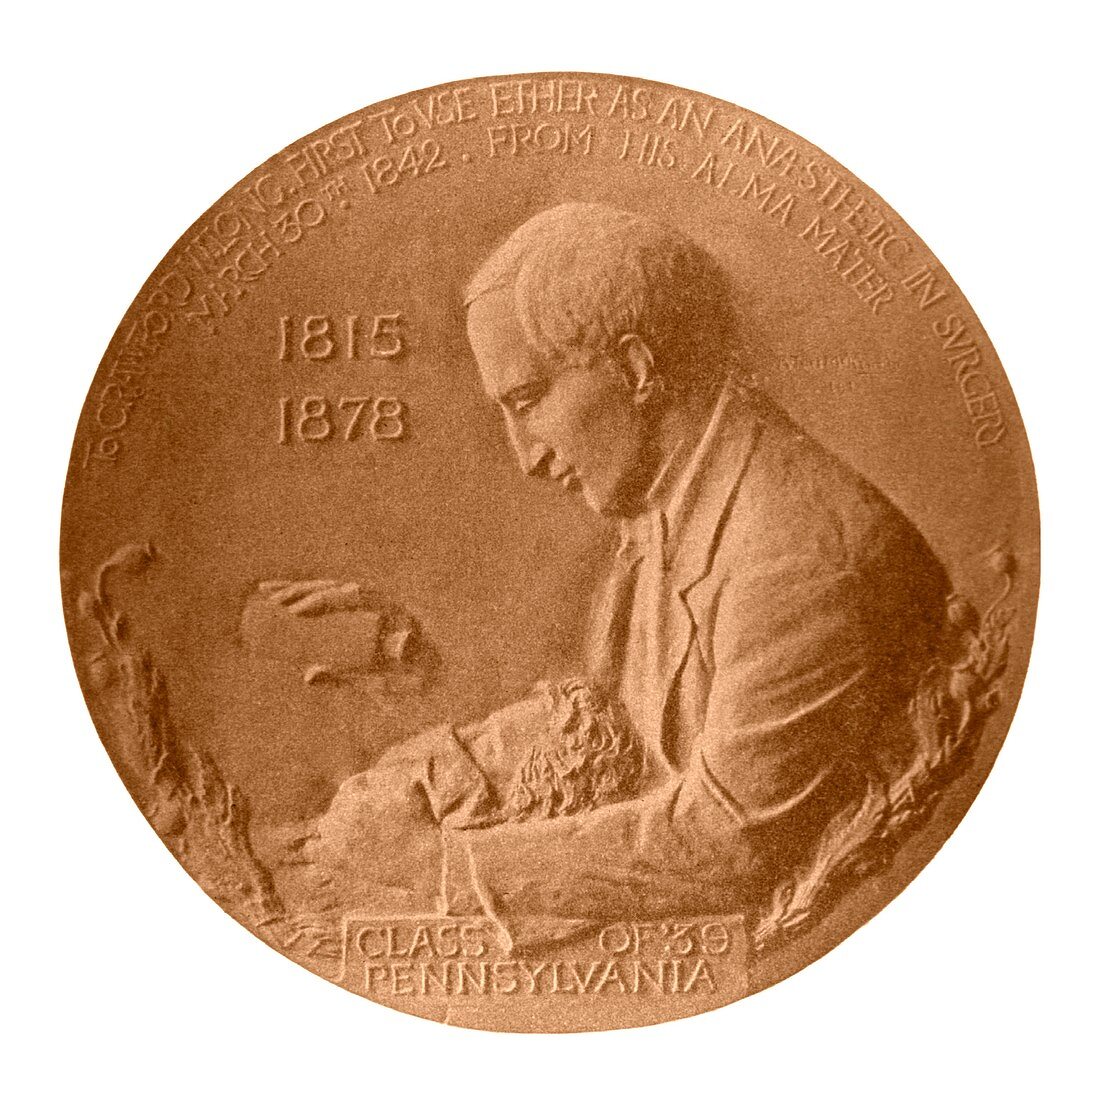 Crawford Long,US surgeon,medal